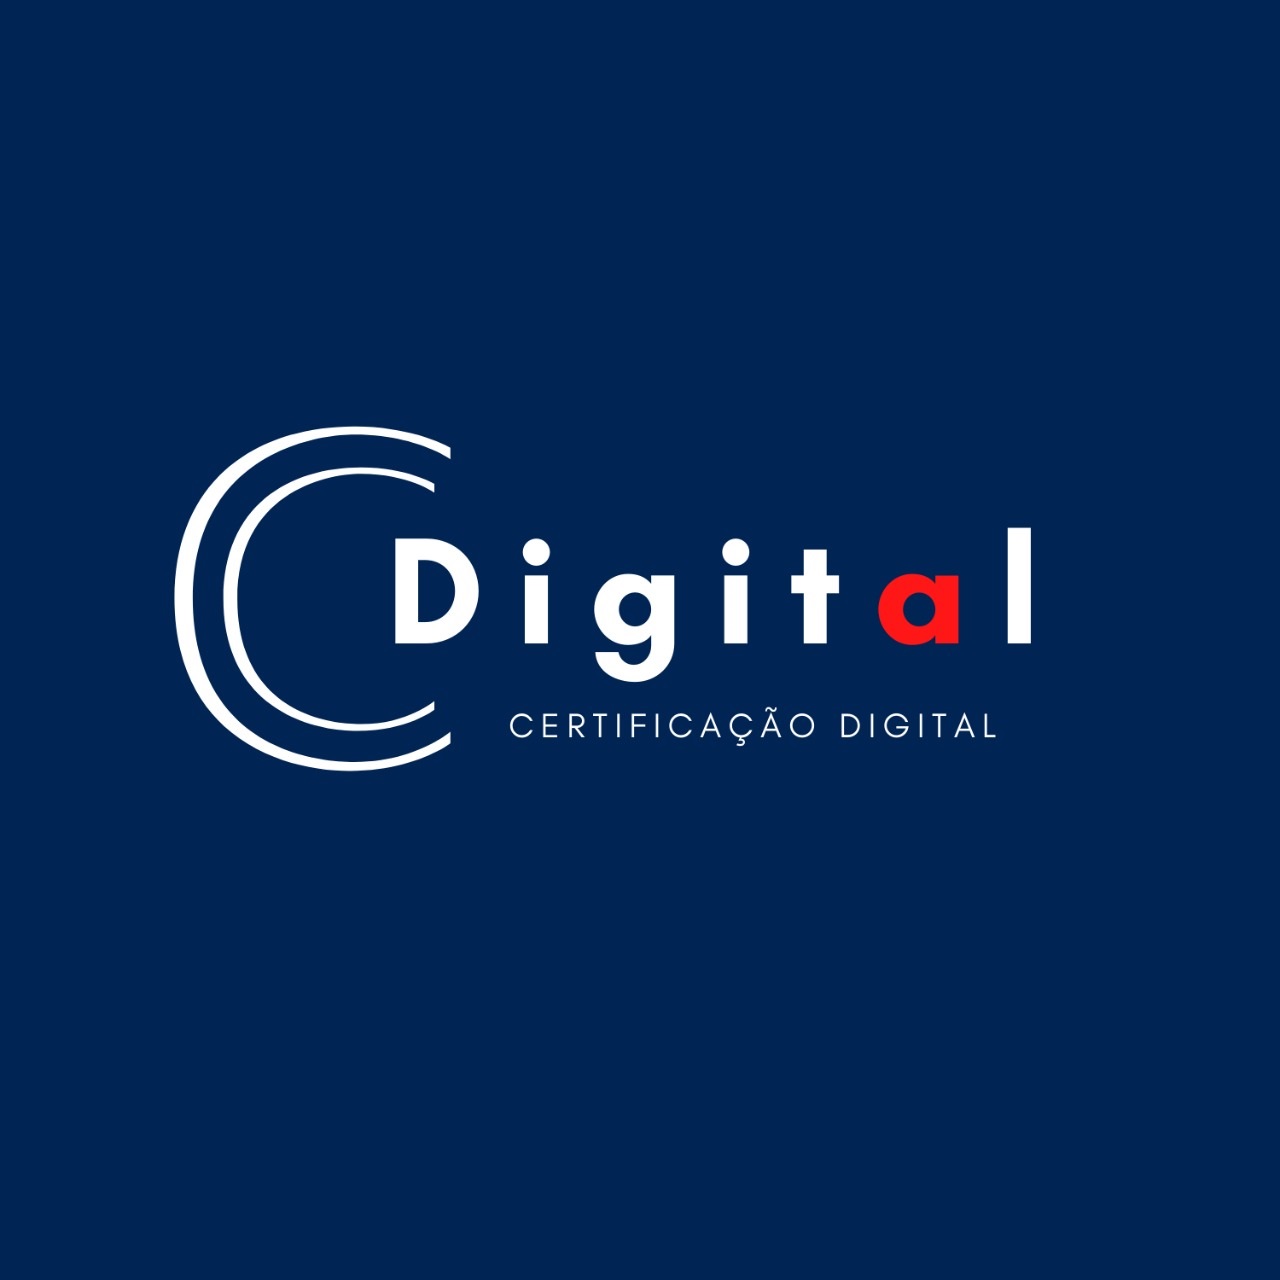 Logotipo do parceiro AR Cdigital &#8211; OAB &#8211; 15%